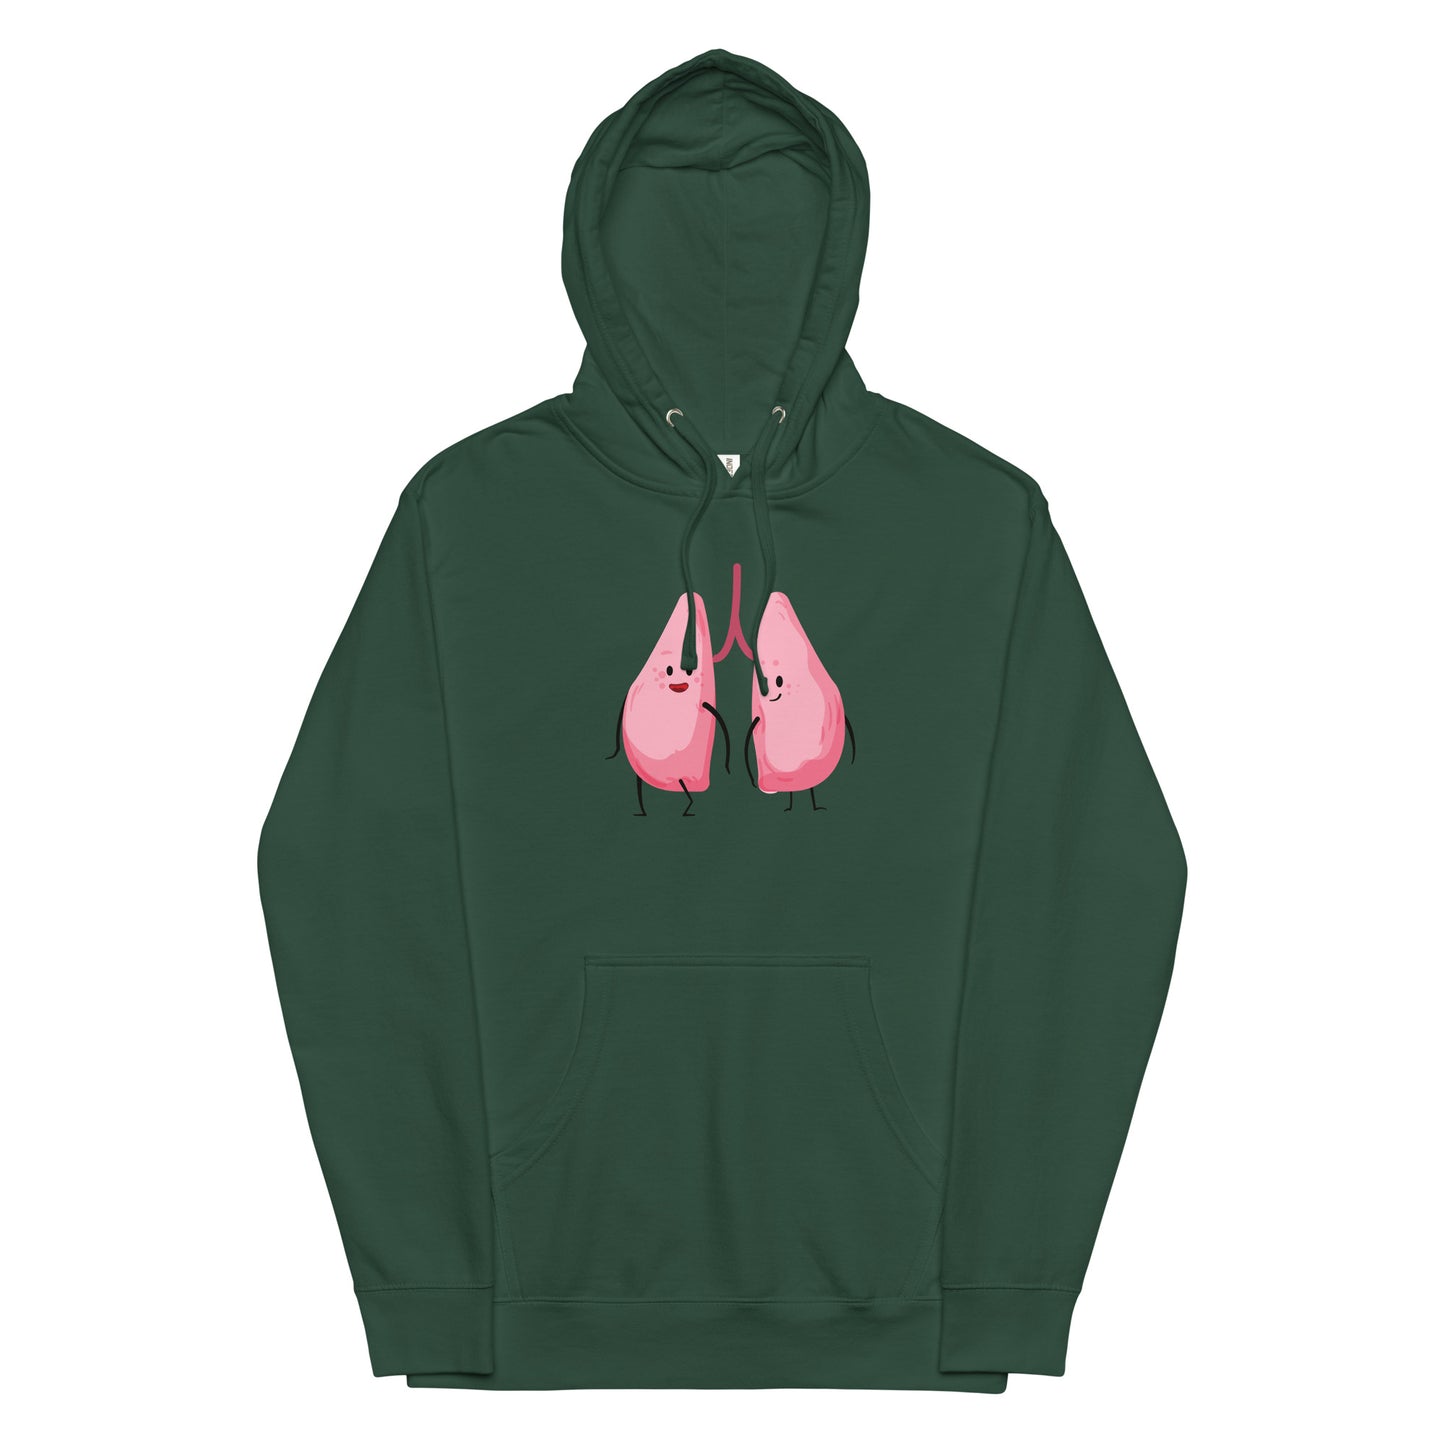 Happy Hoodies: Lungs